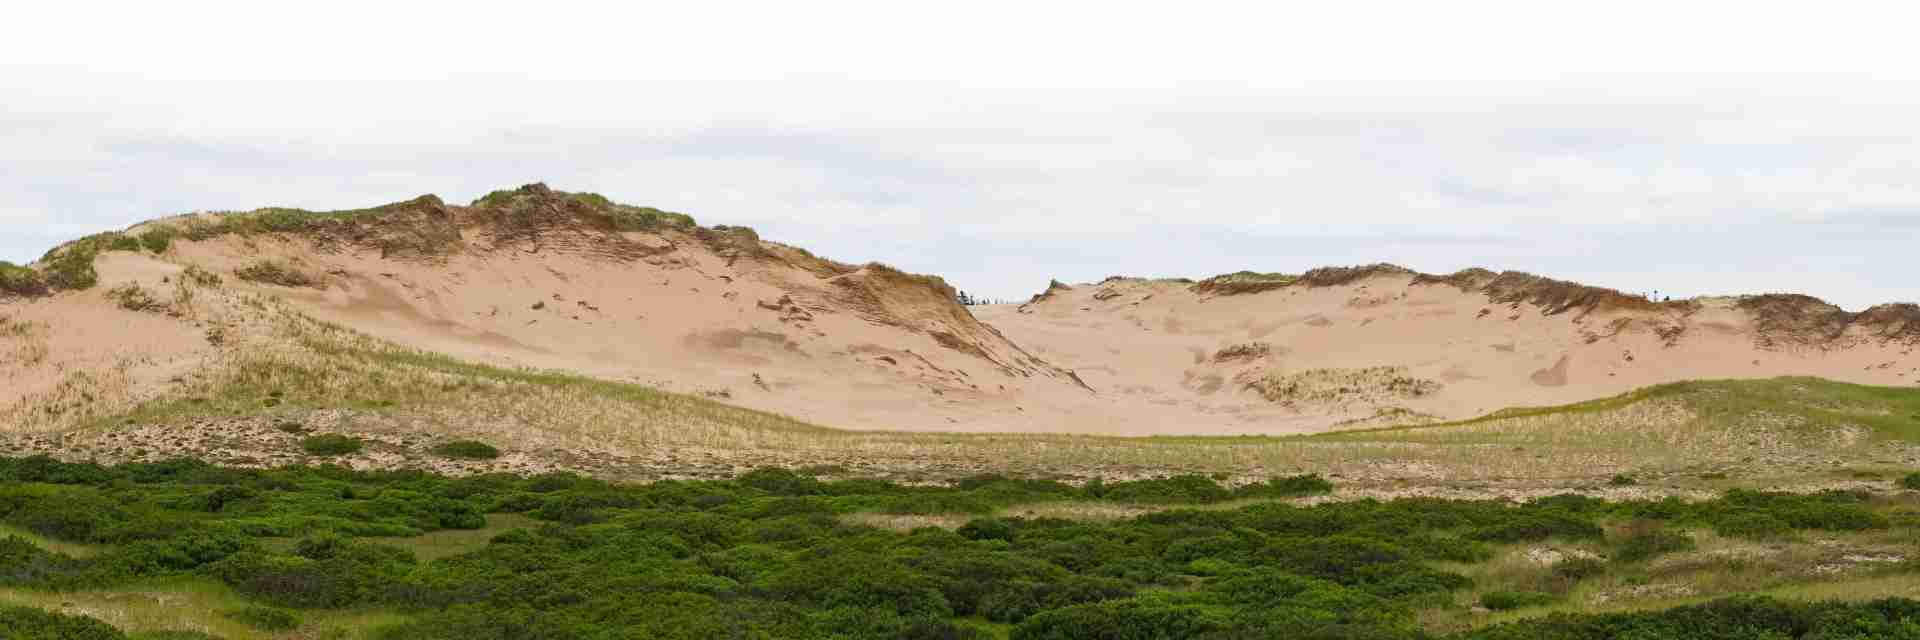 Home - sand-dunes-hills-grass-1